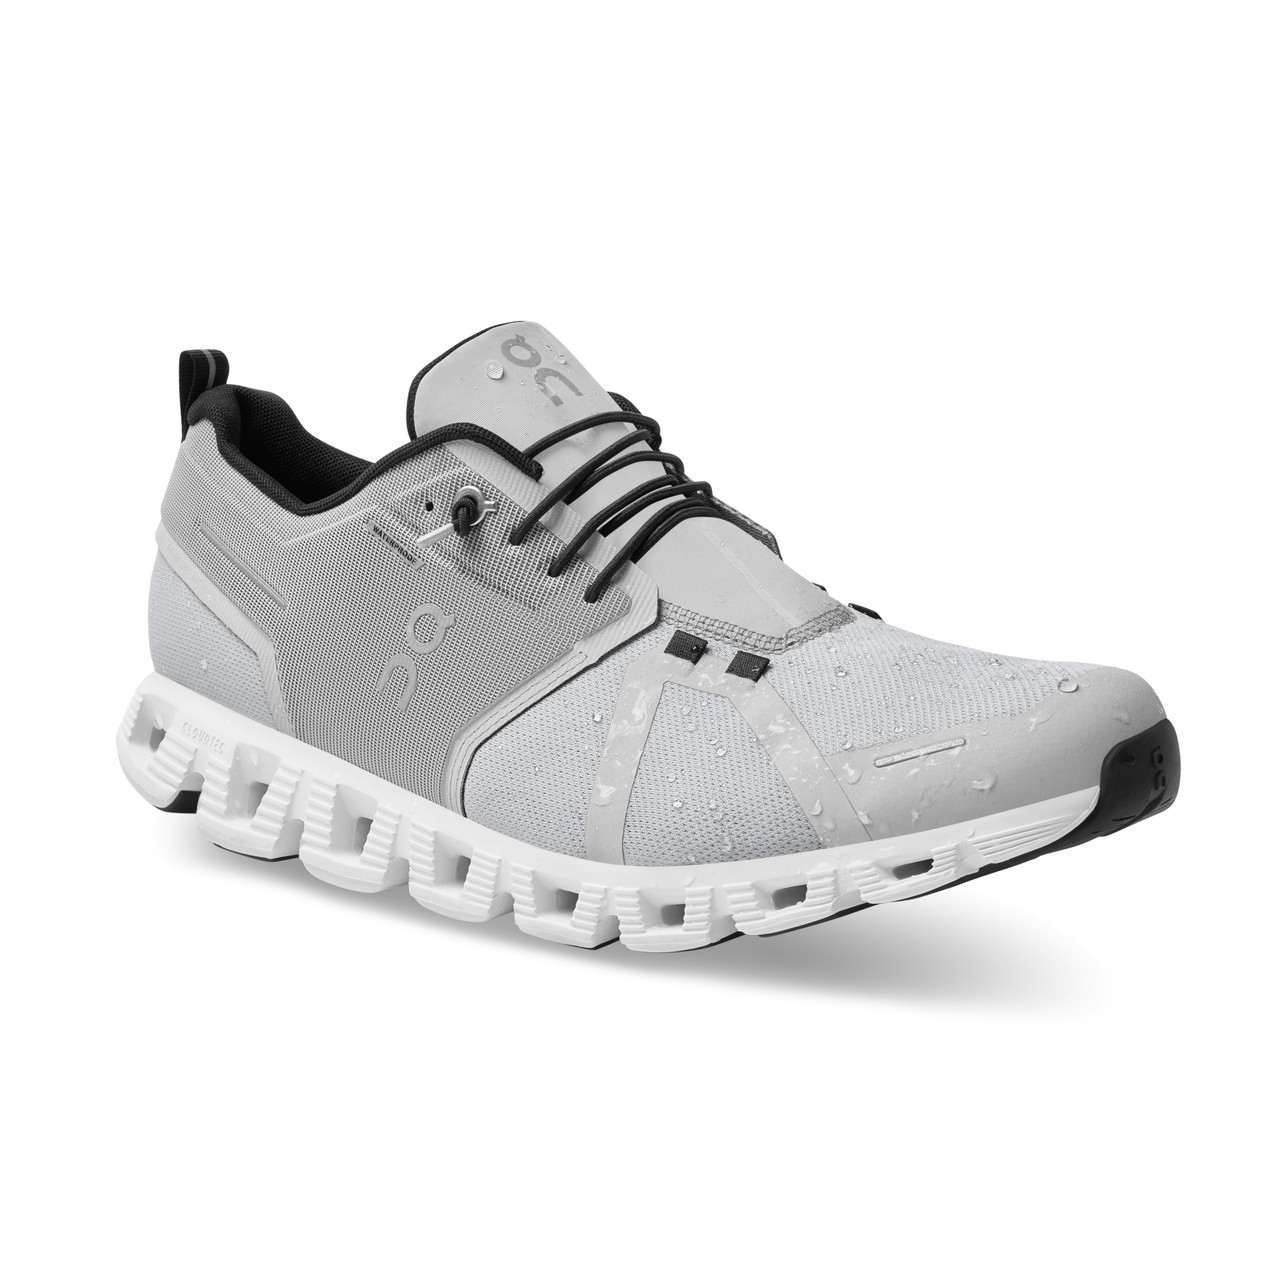 Cloud 5 Waterproof Shoes Glacier/White